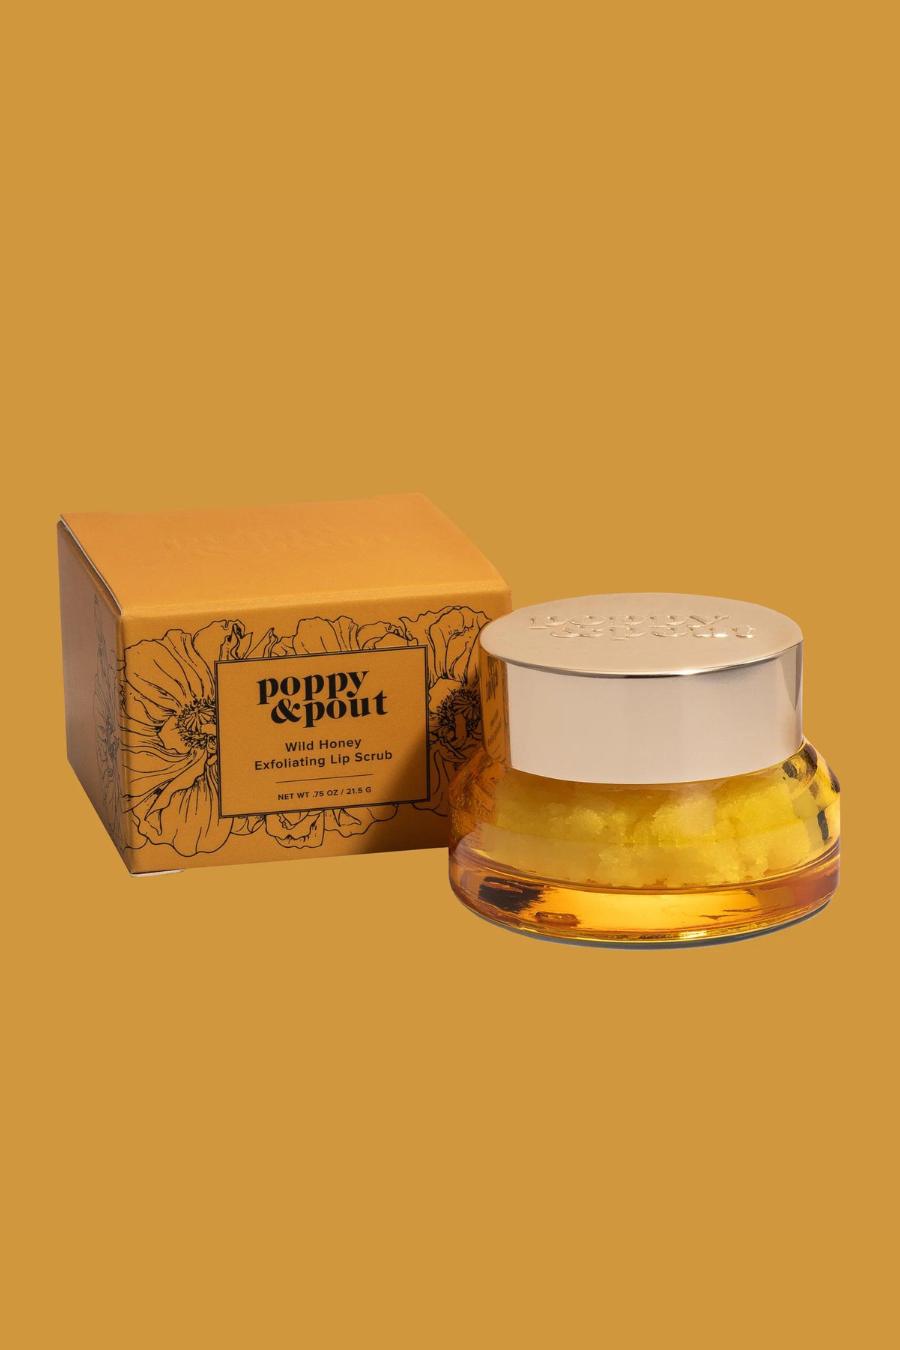 Poppy & Pout Lip Scrub- Wild Honey